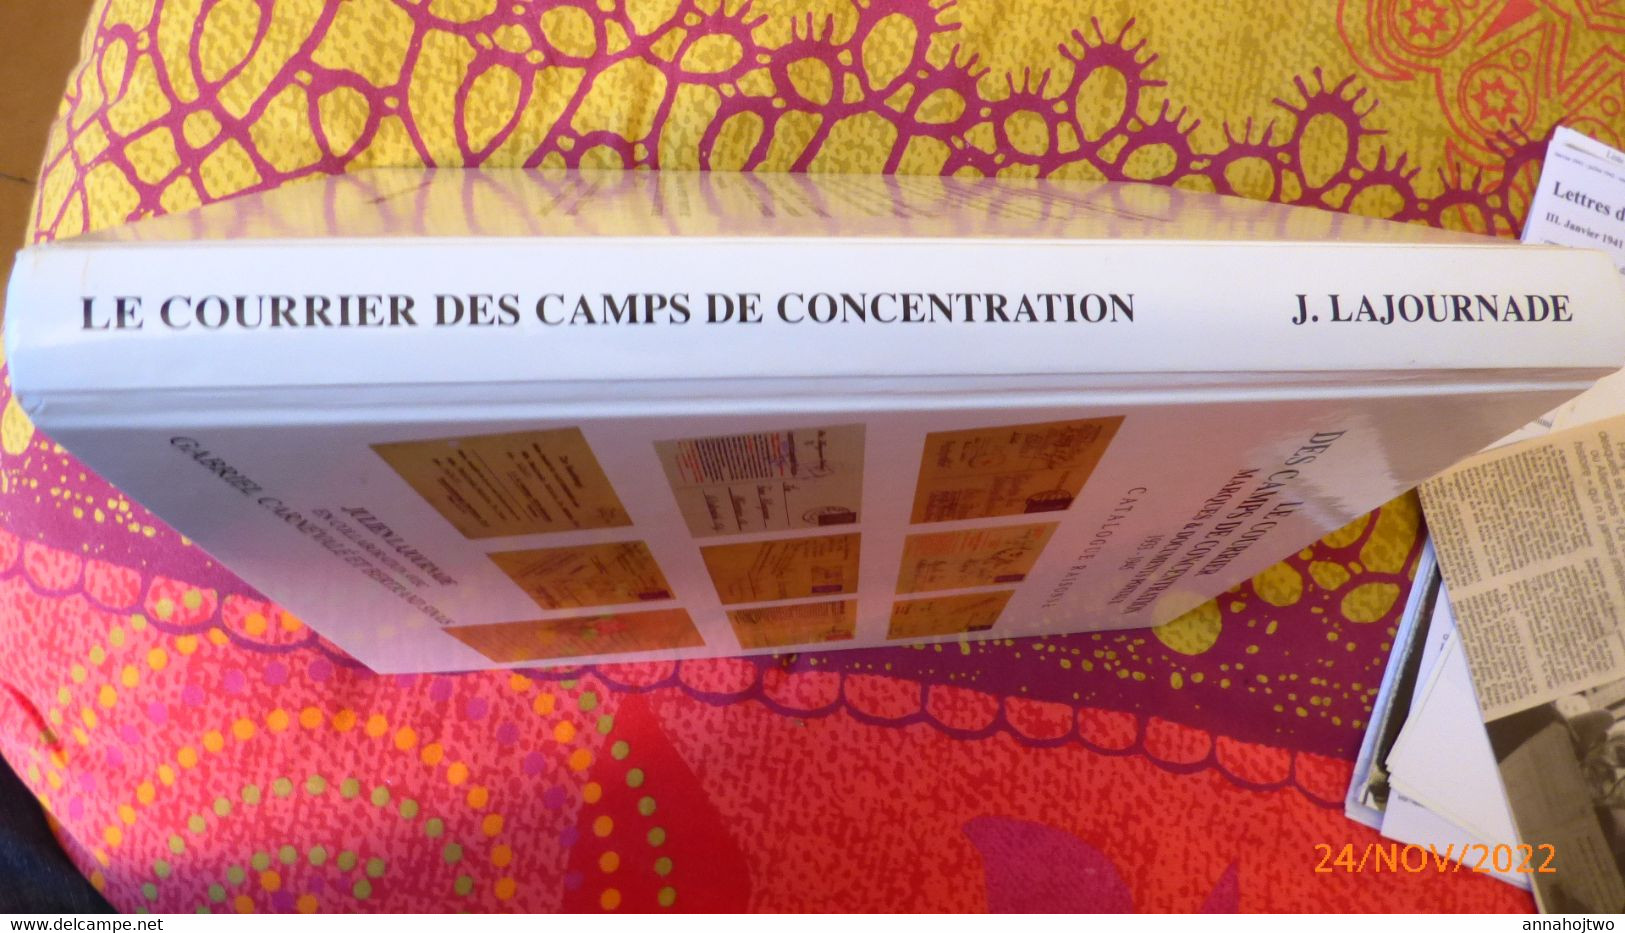 LE COURRIER DES CAMPS DE CONCENTRATION-Marques & documents postaux 1933-1945-Classement par camp,déportés/ J.Lajournade